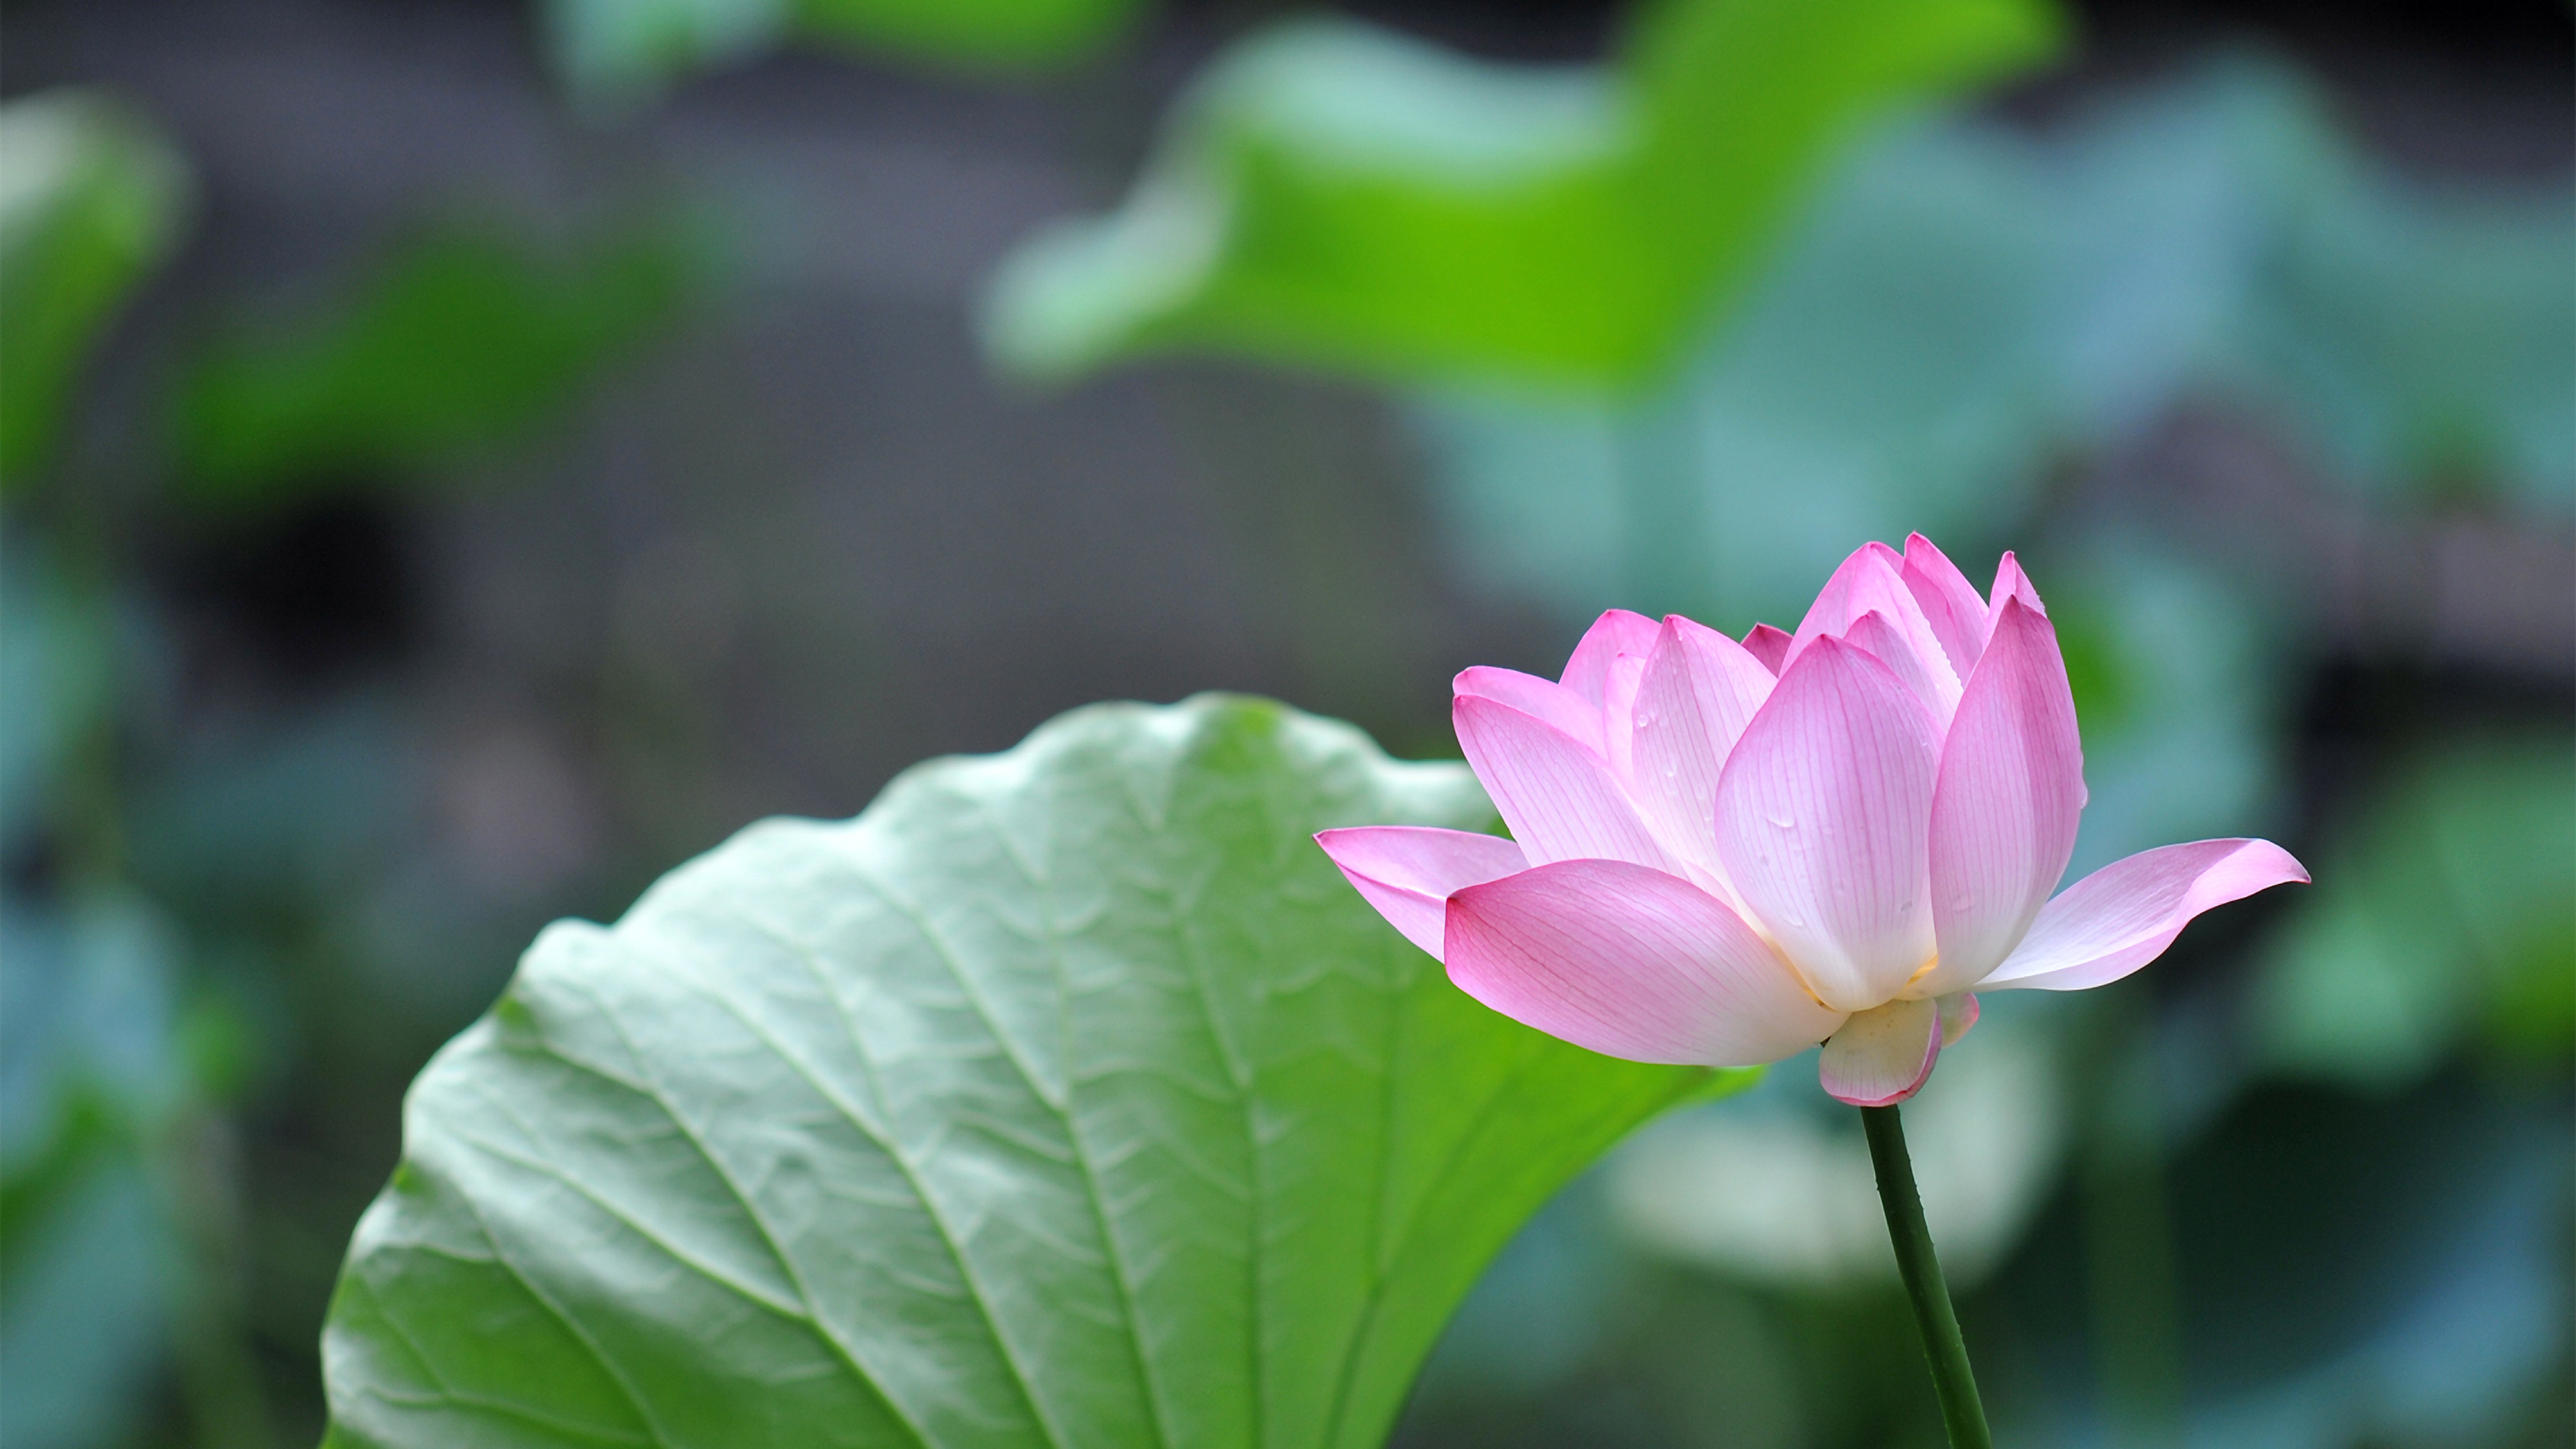 Pink Lotus Flower 4k Ultra HD Desktop Wallpaper Uploaded By